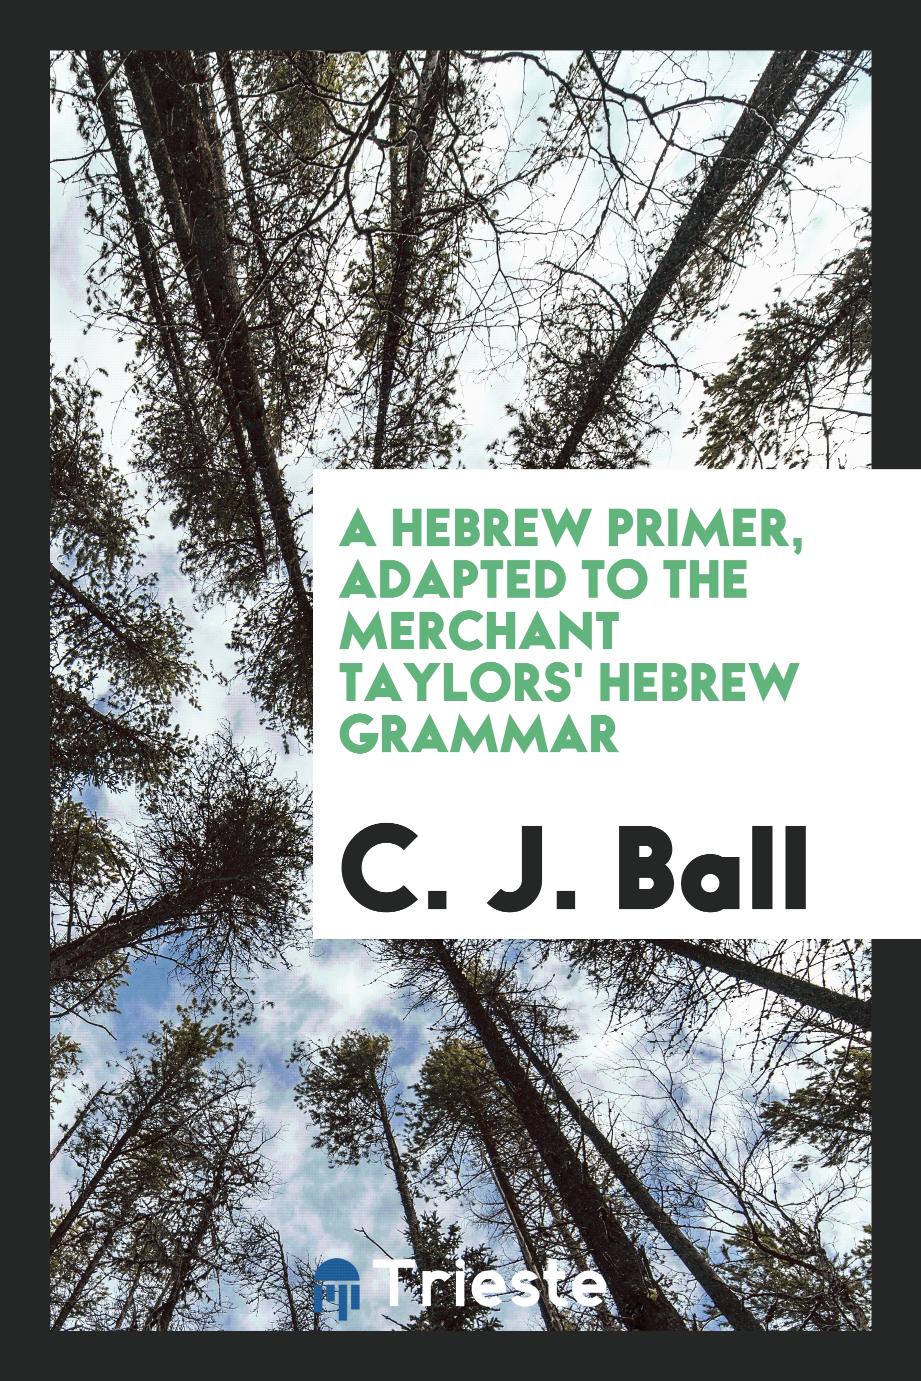 A Hebrew primer, adapted to the Merchant Taylors' Hebrew grammar